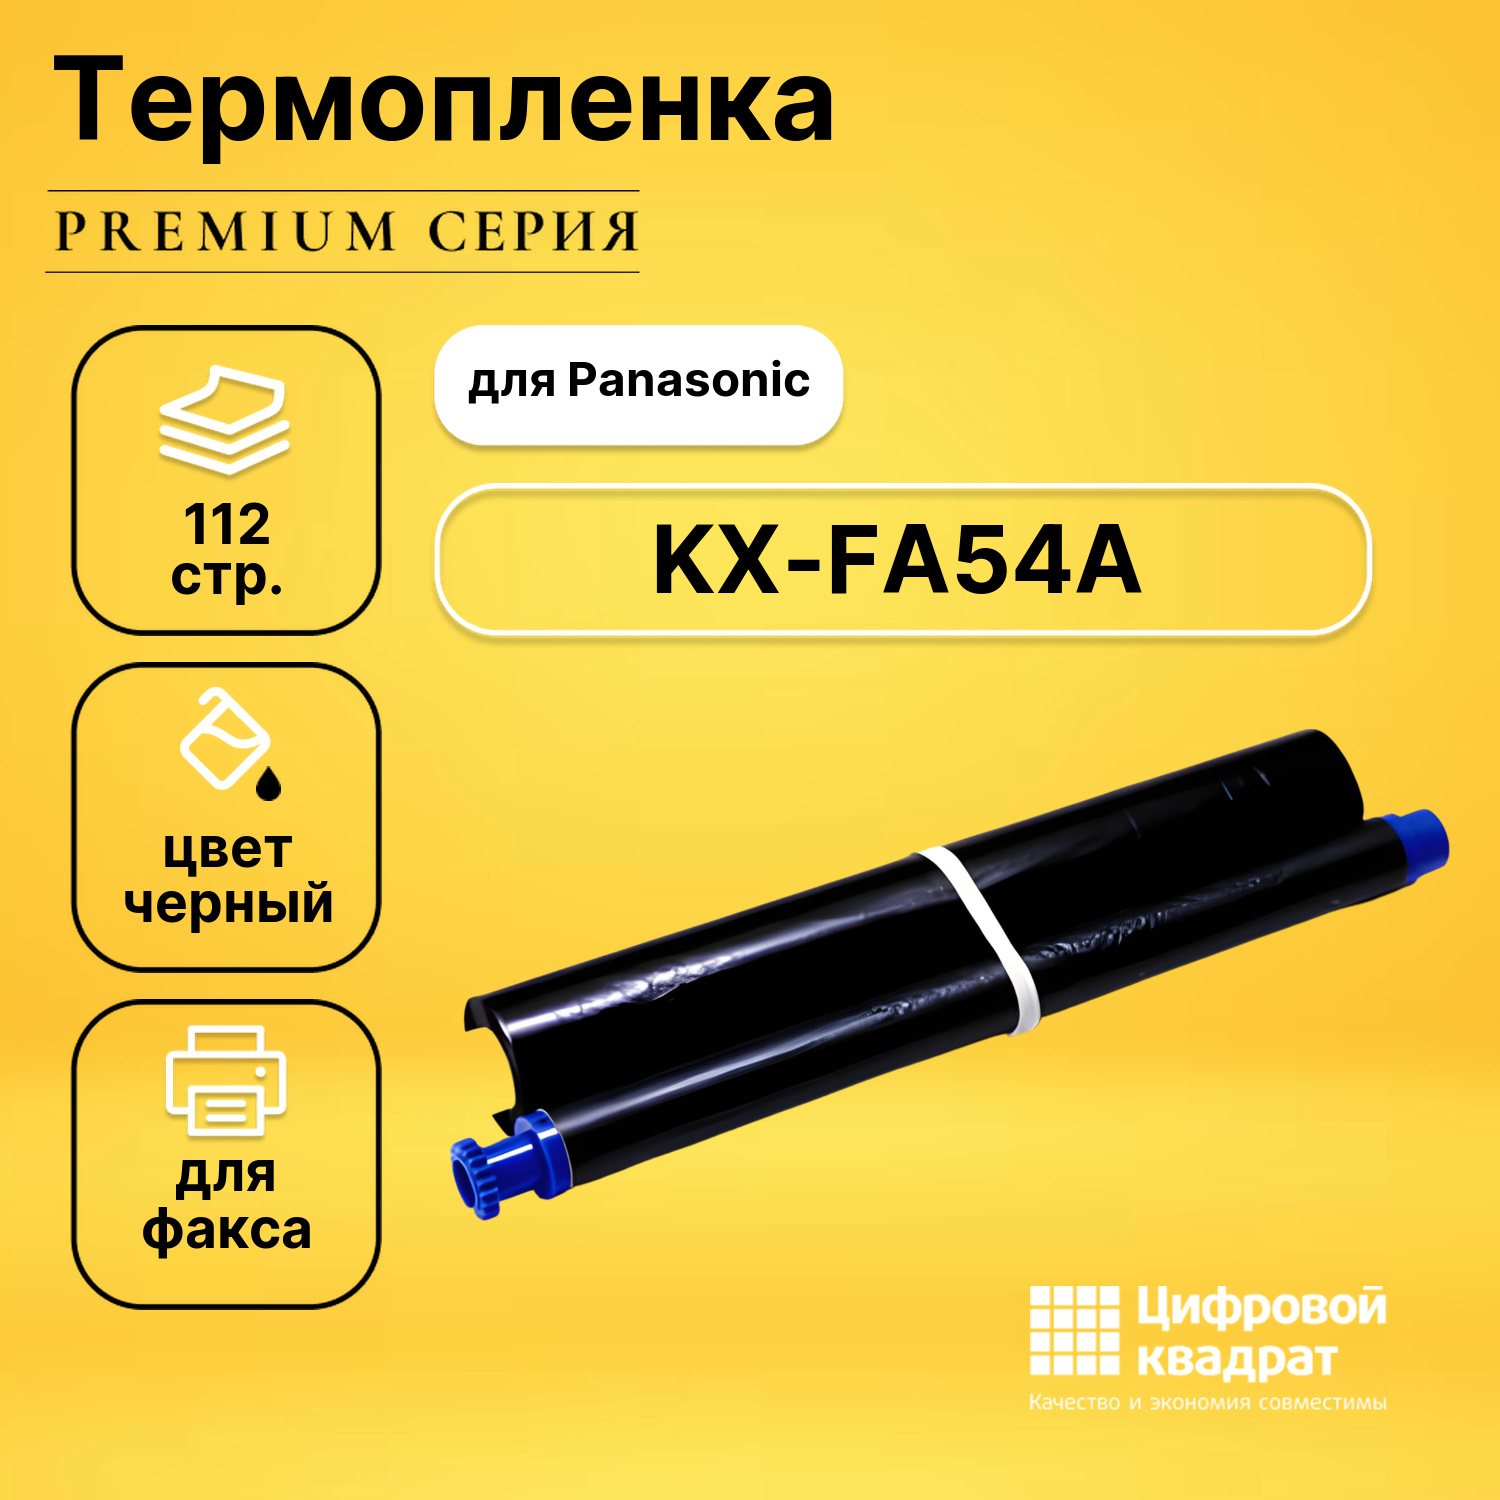 Термопленка DS KX-FA54A Panasonic двойная упаковка совместимая